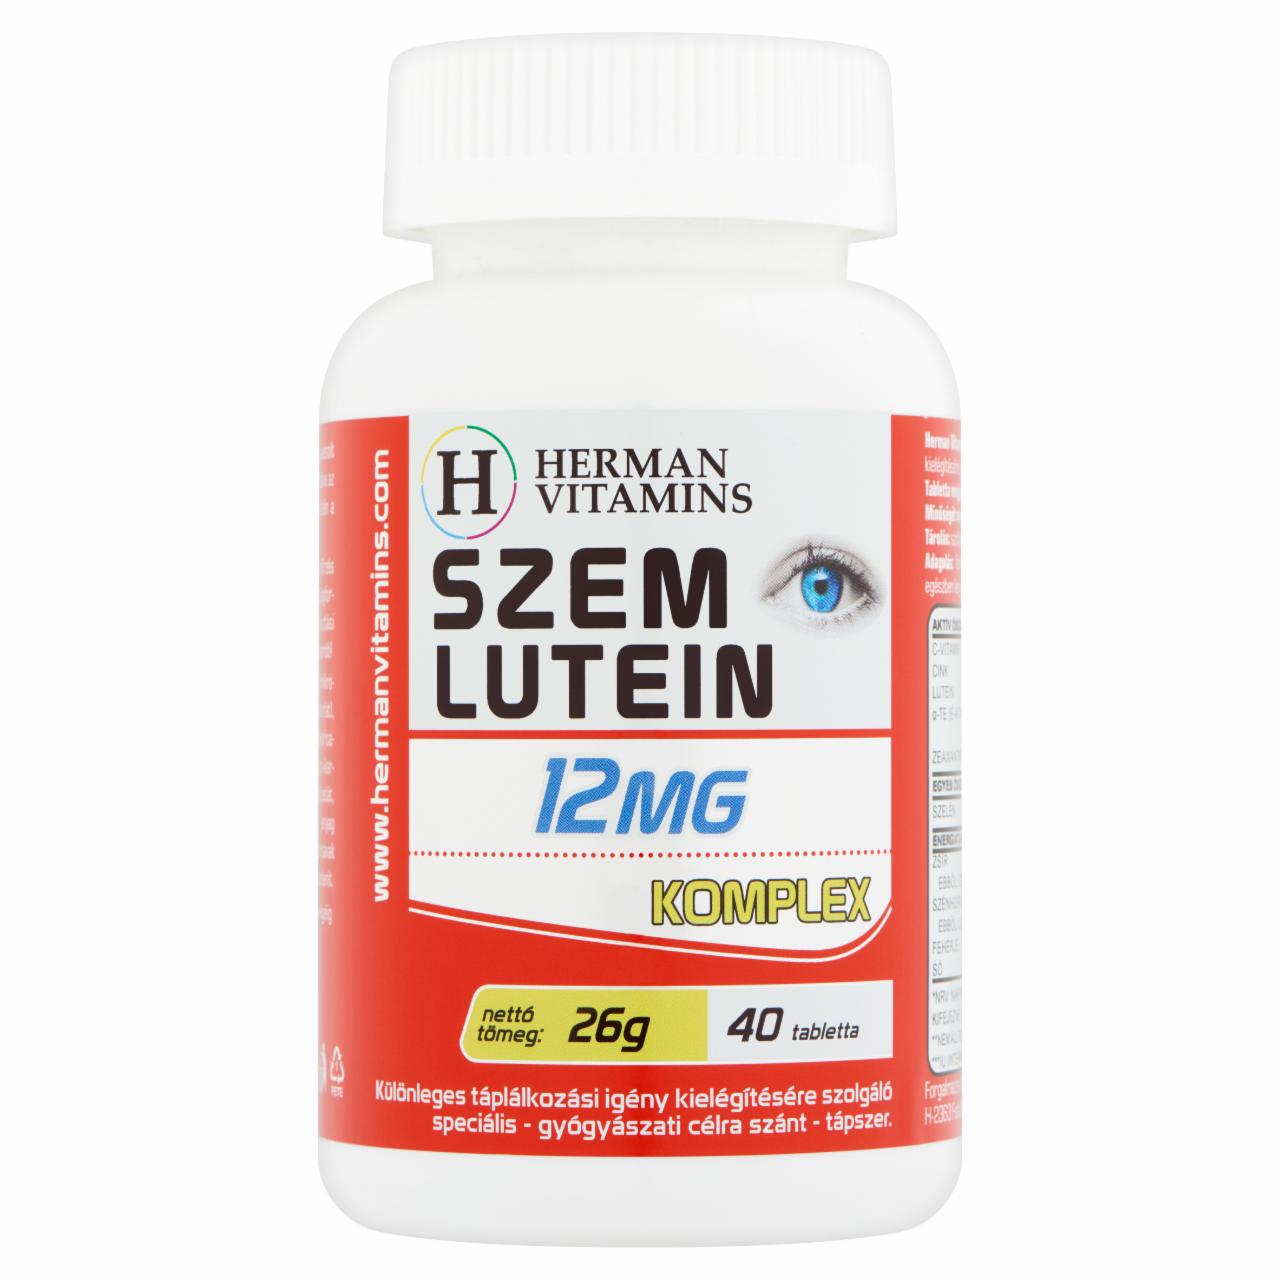 Képek - Herman Vitamins Szem-Lutein 12 mg komplex speciális tápszer 40 db 26 g